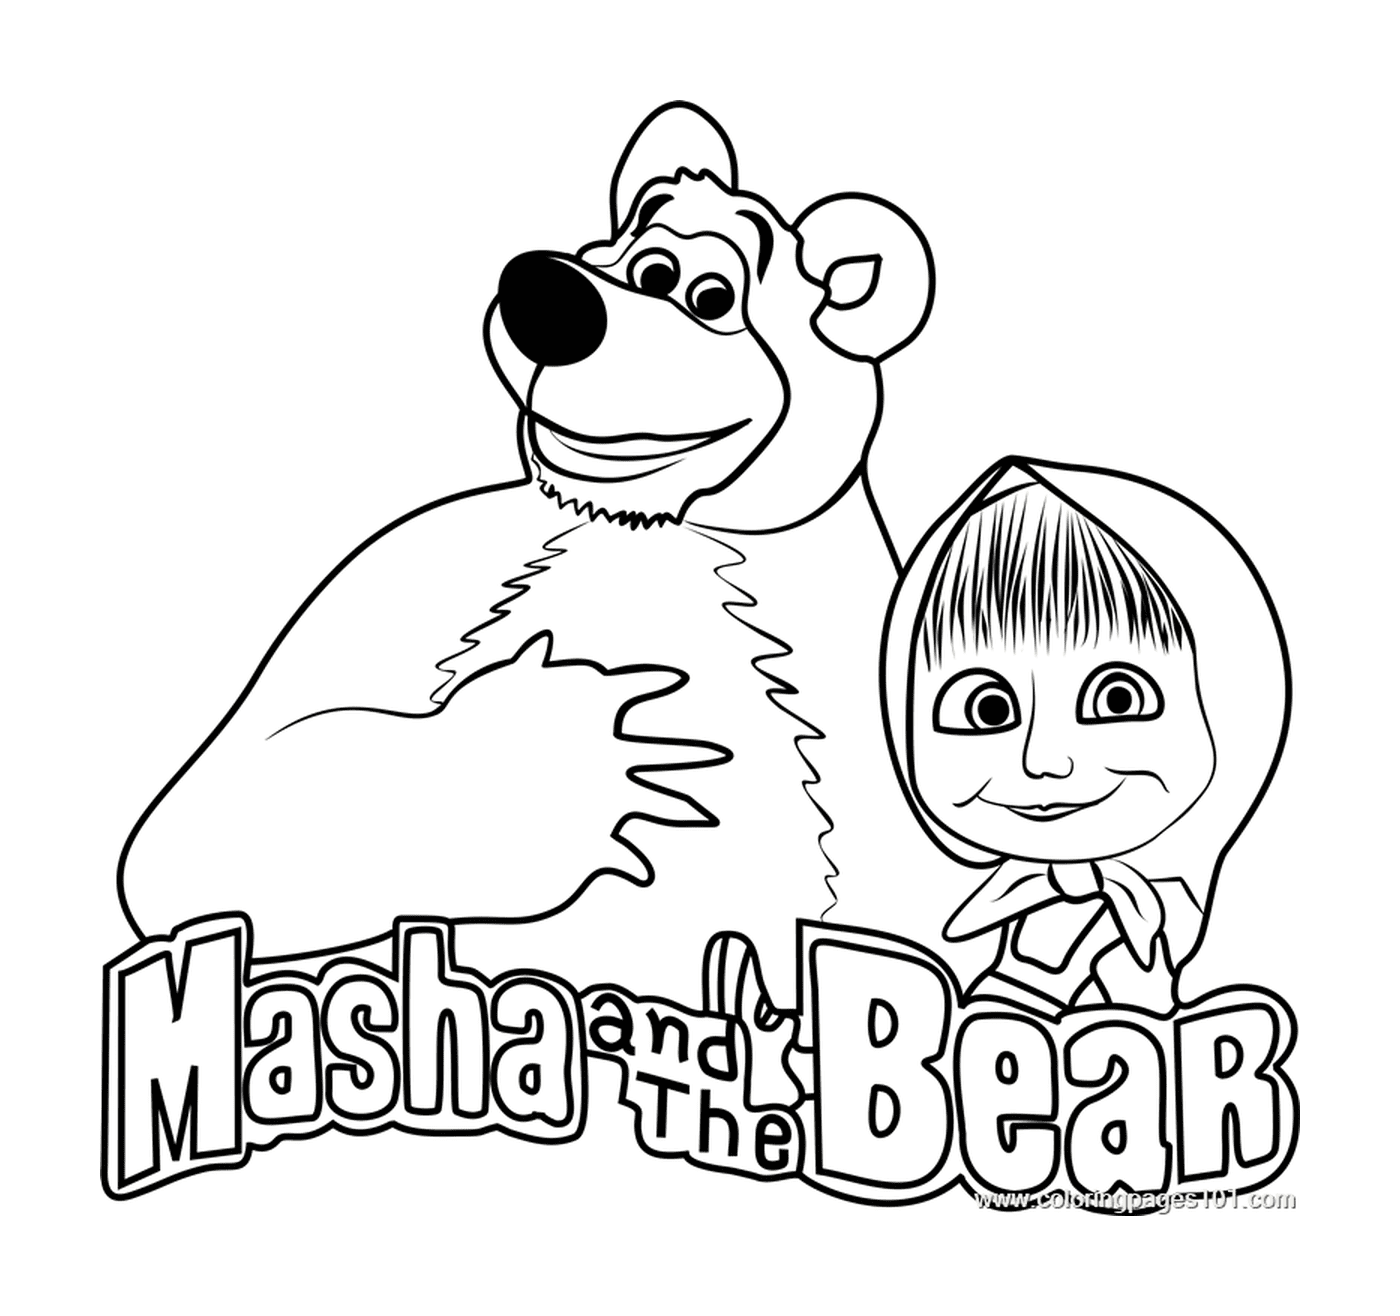  Logo Mascha und Michka, ein liebenswertes Duo 